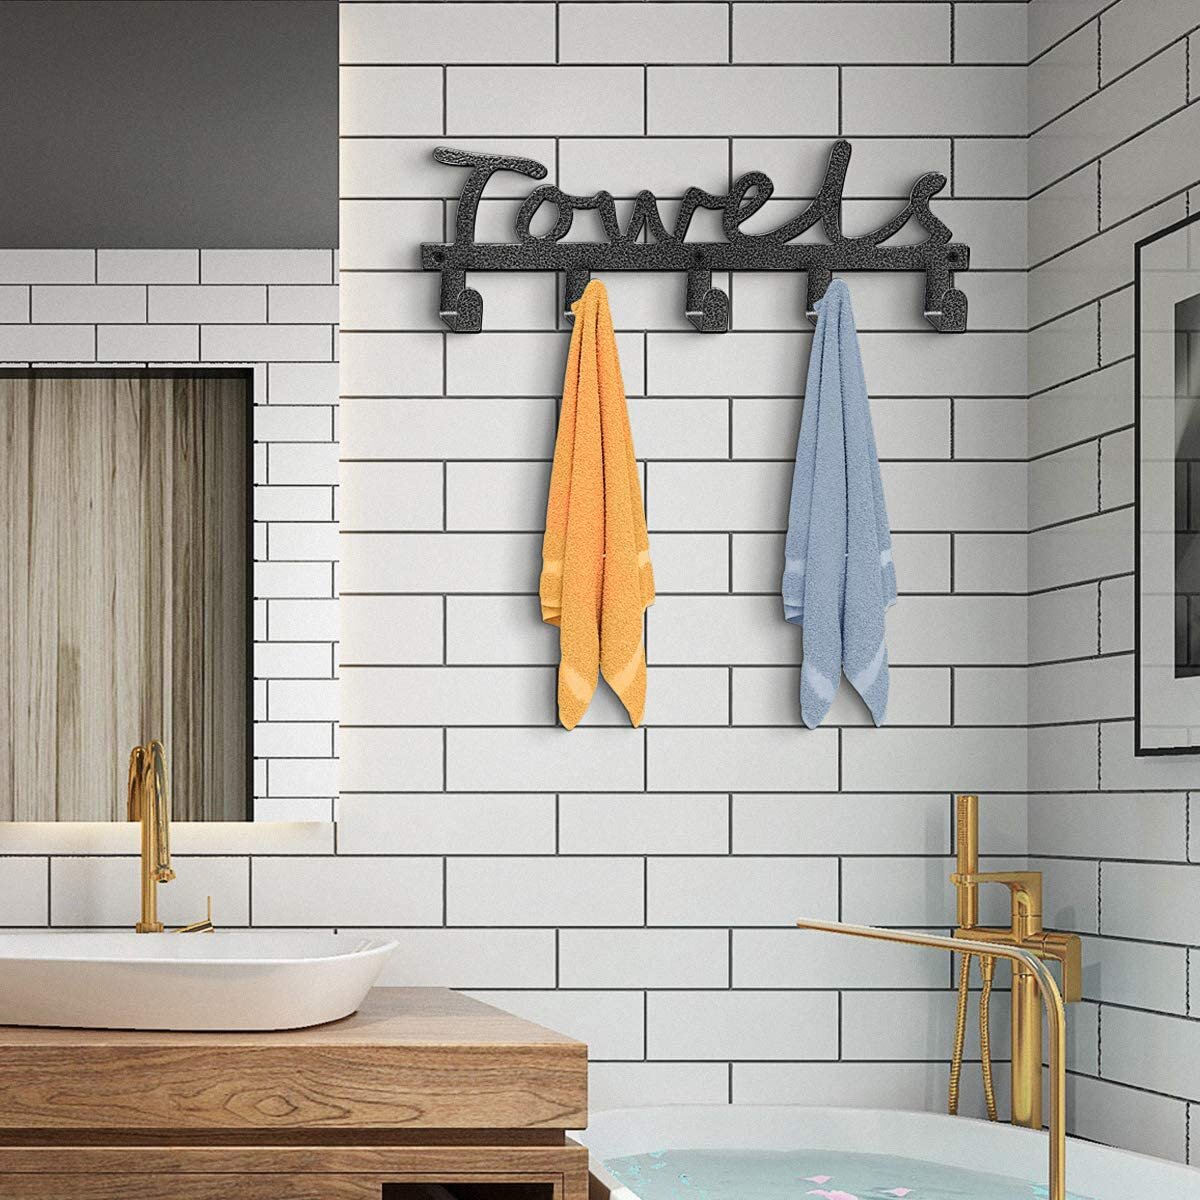 Hot Bath Sign Cast Iron Farmhouse Bathroom Decor Bathrobe Towel Wall Robe Hook 